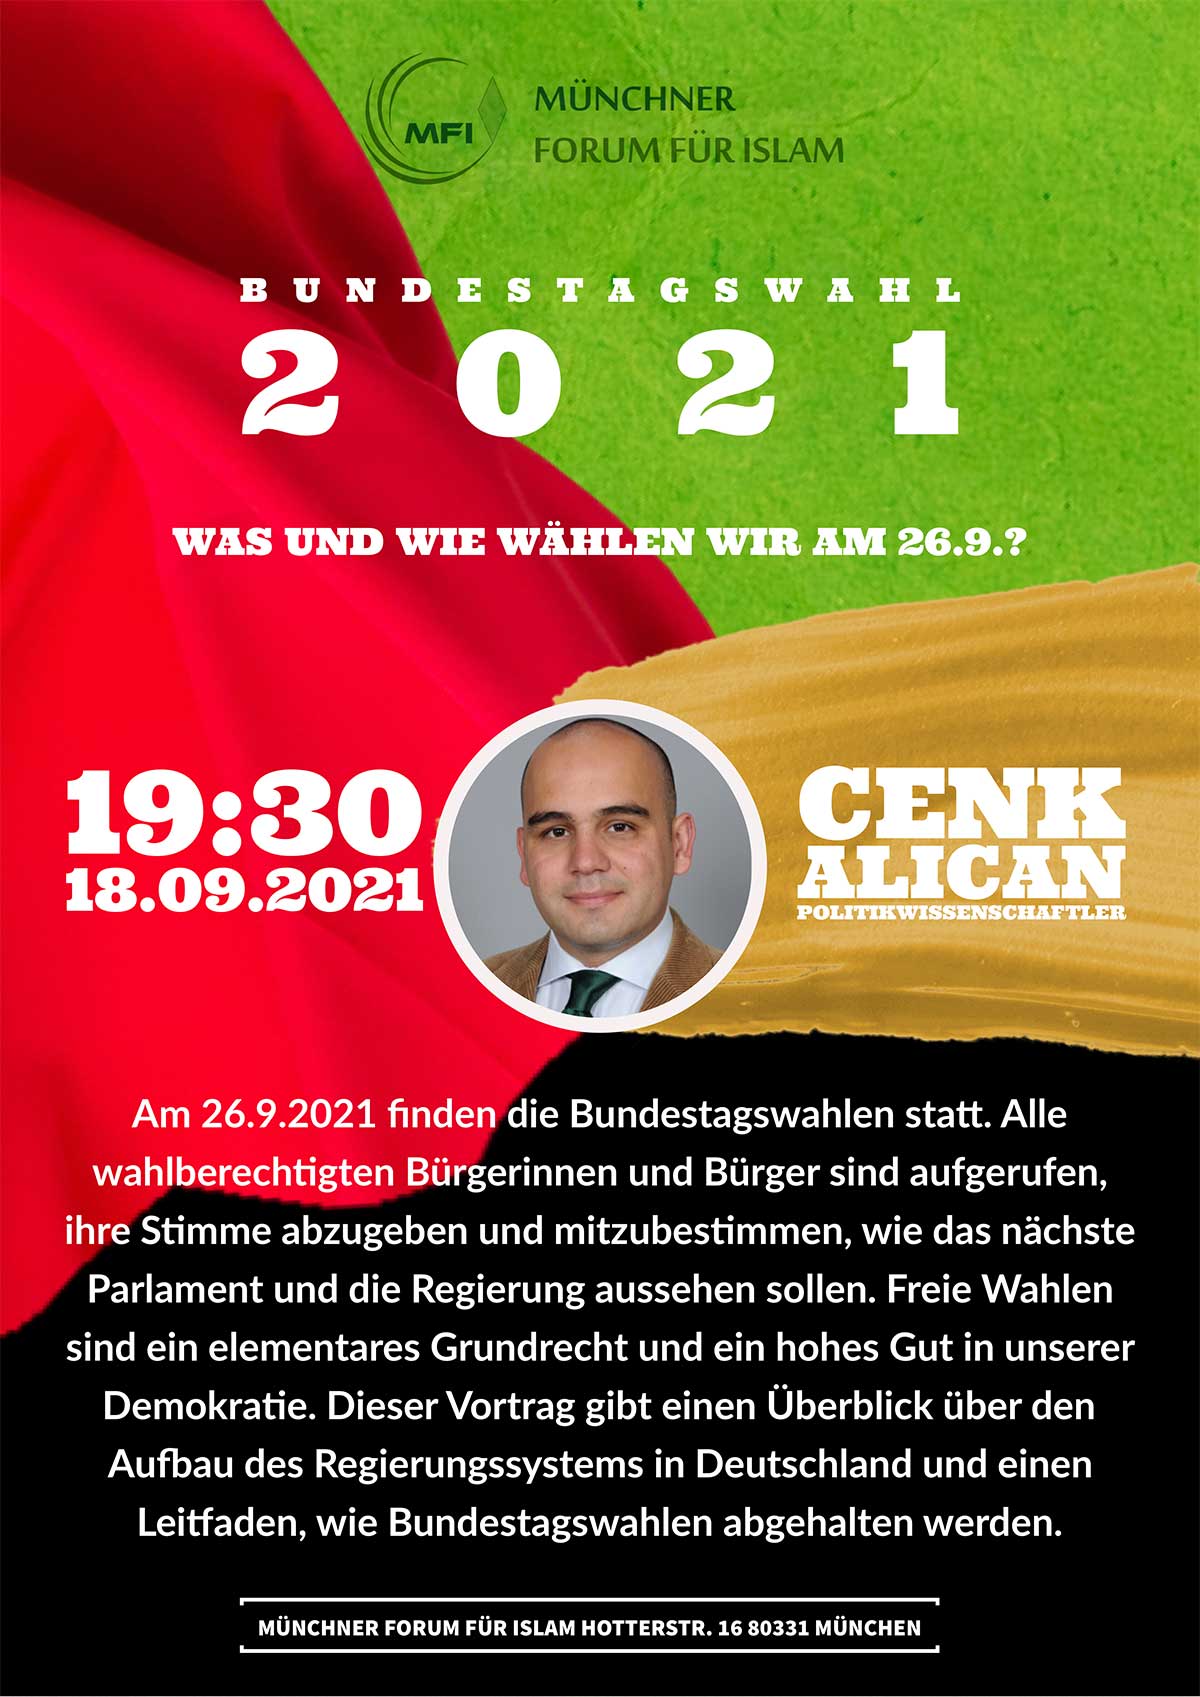 MFI Bundestagswahlen 2021